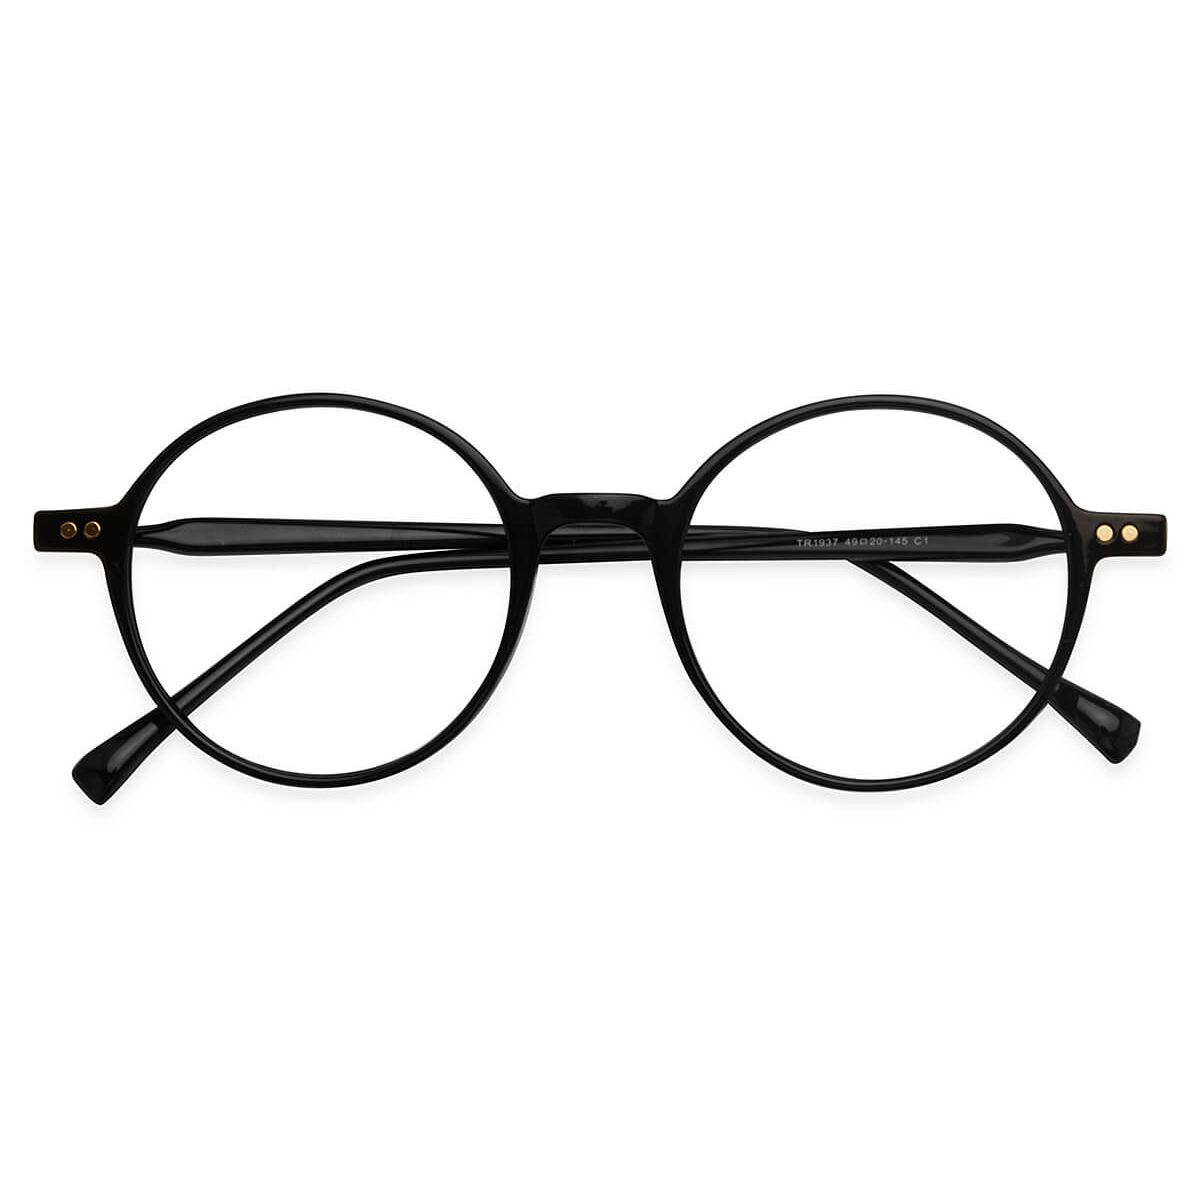 TR1937 Round Black Eyeglasses Frames | Leoptique